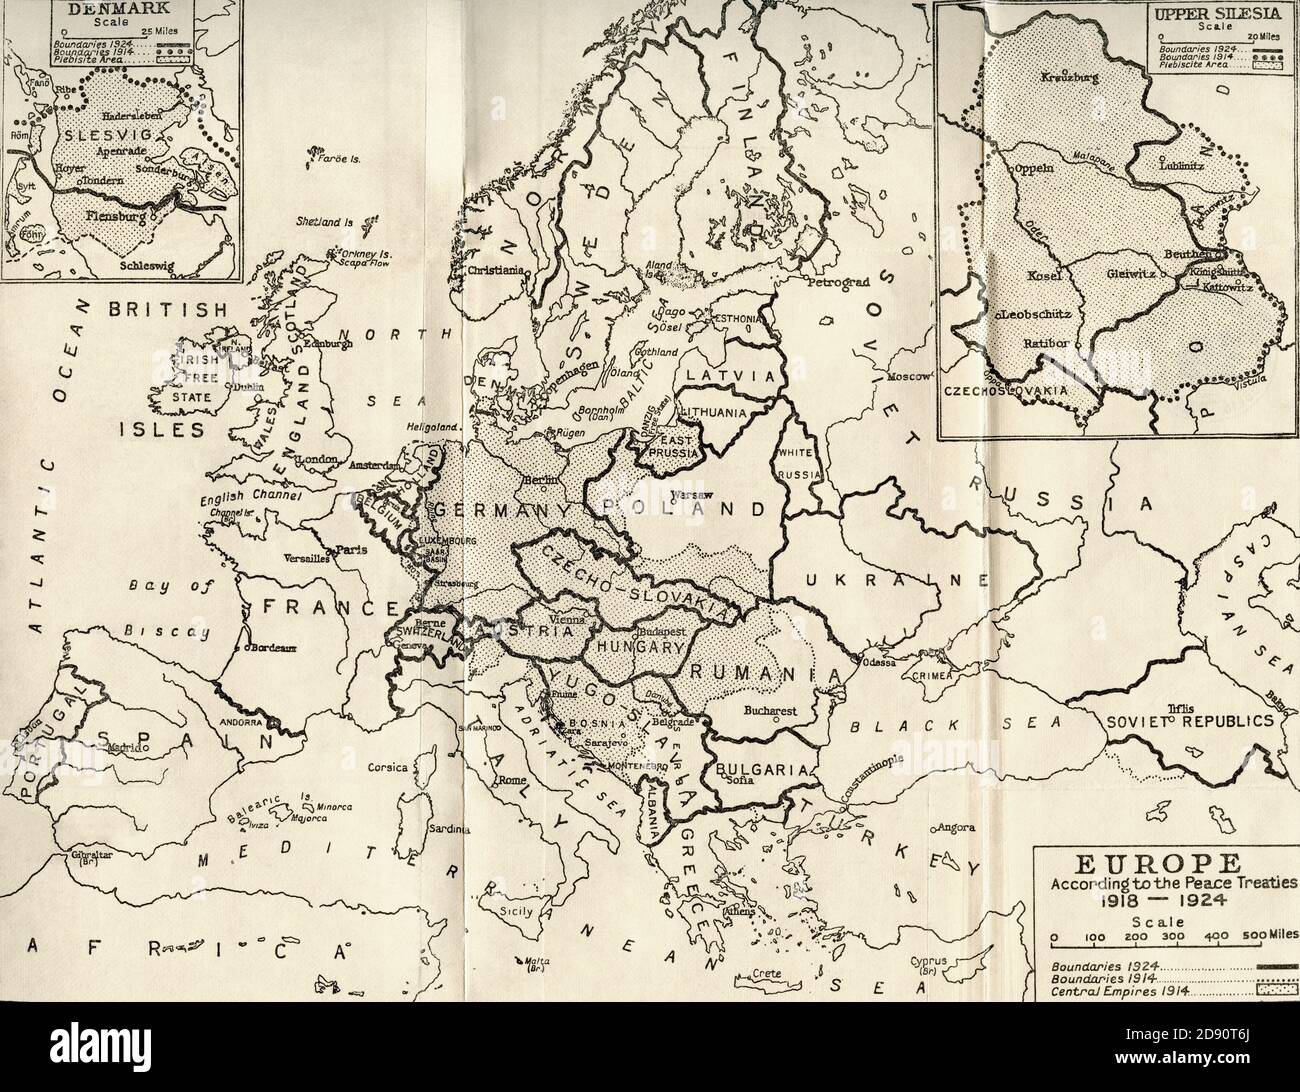 Karte von Europa im Jahr 1815. Aus der Evolution des modernen Europas, 1453 - 1932, veröffentlicht 1933. Stockfoto